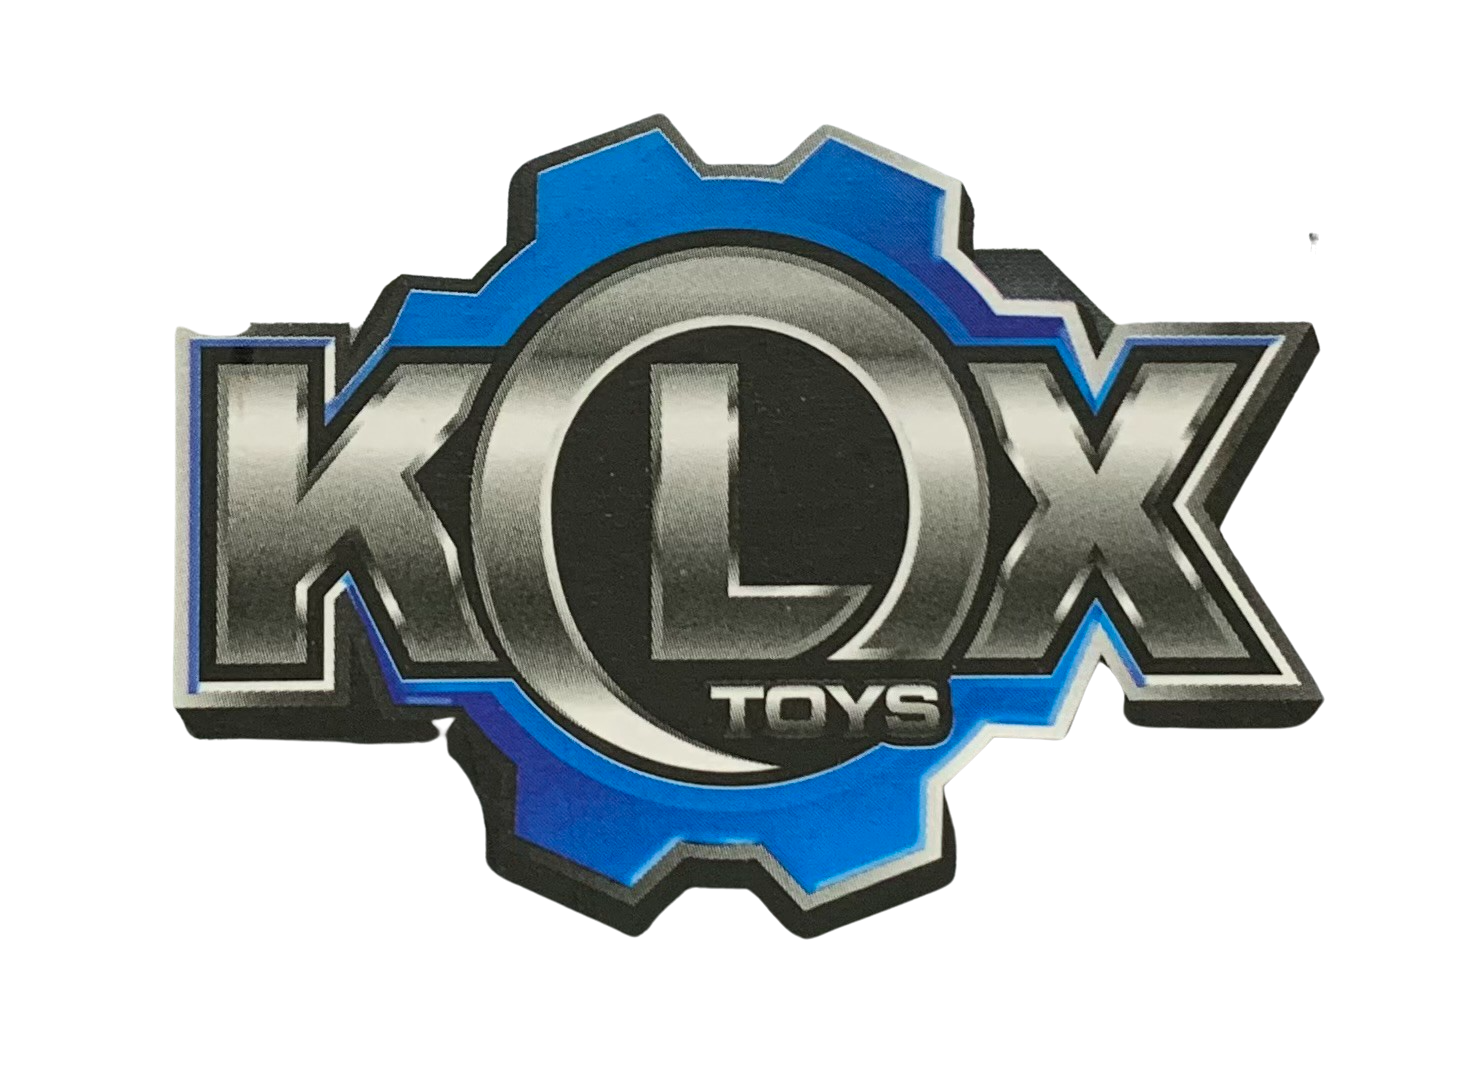 KLOX Toys